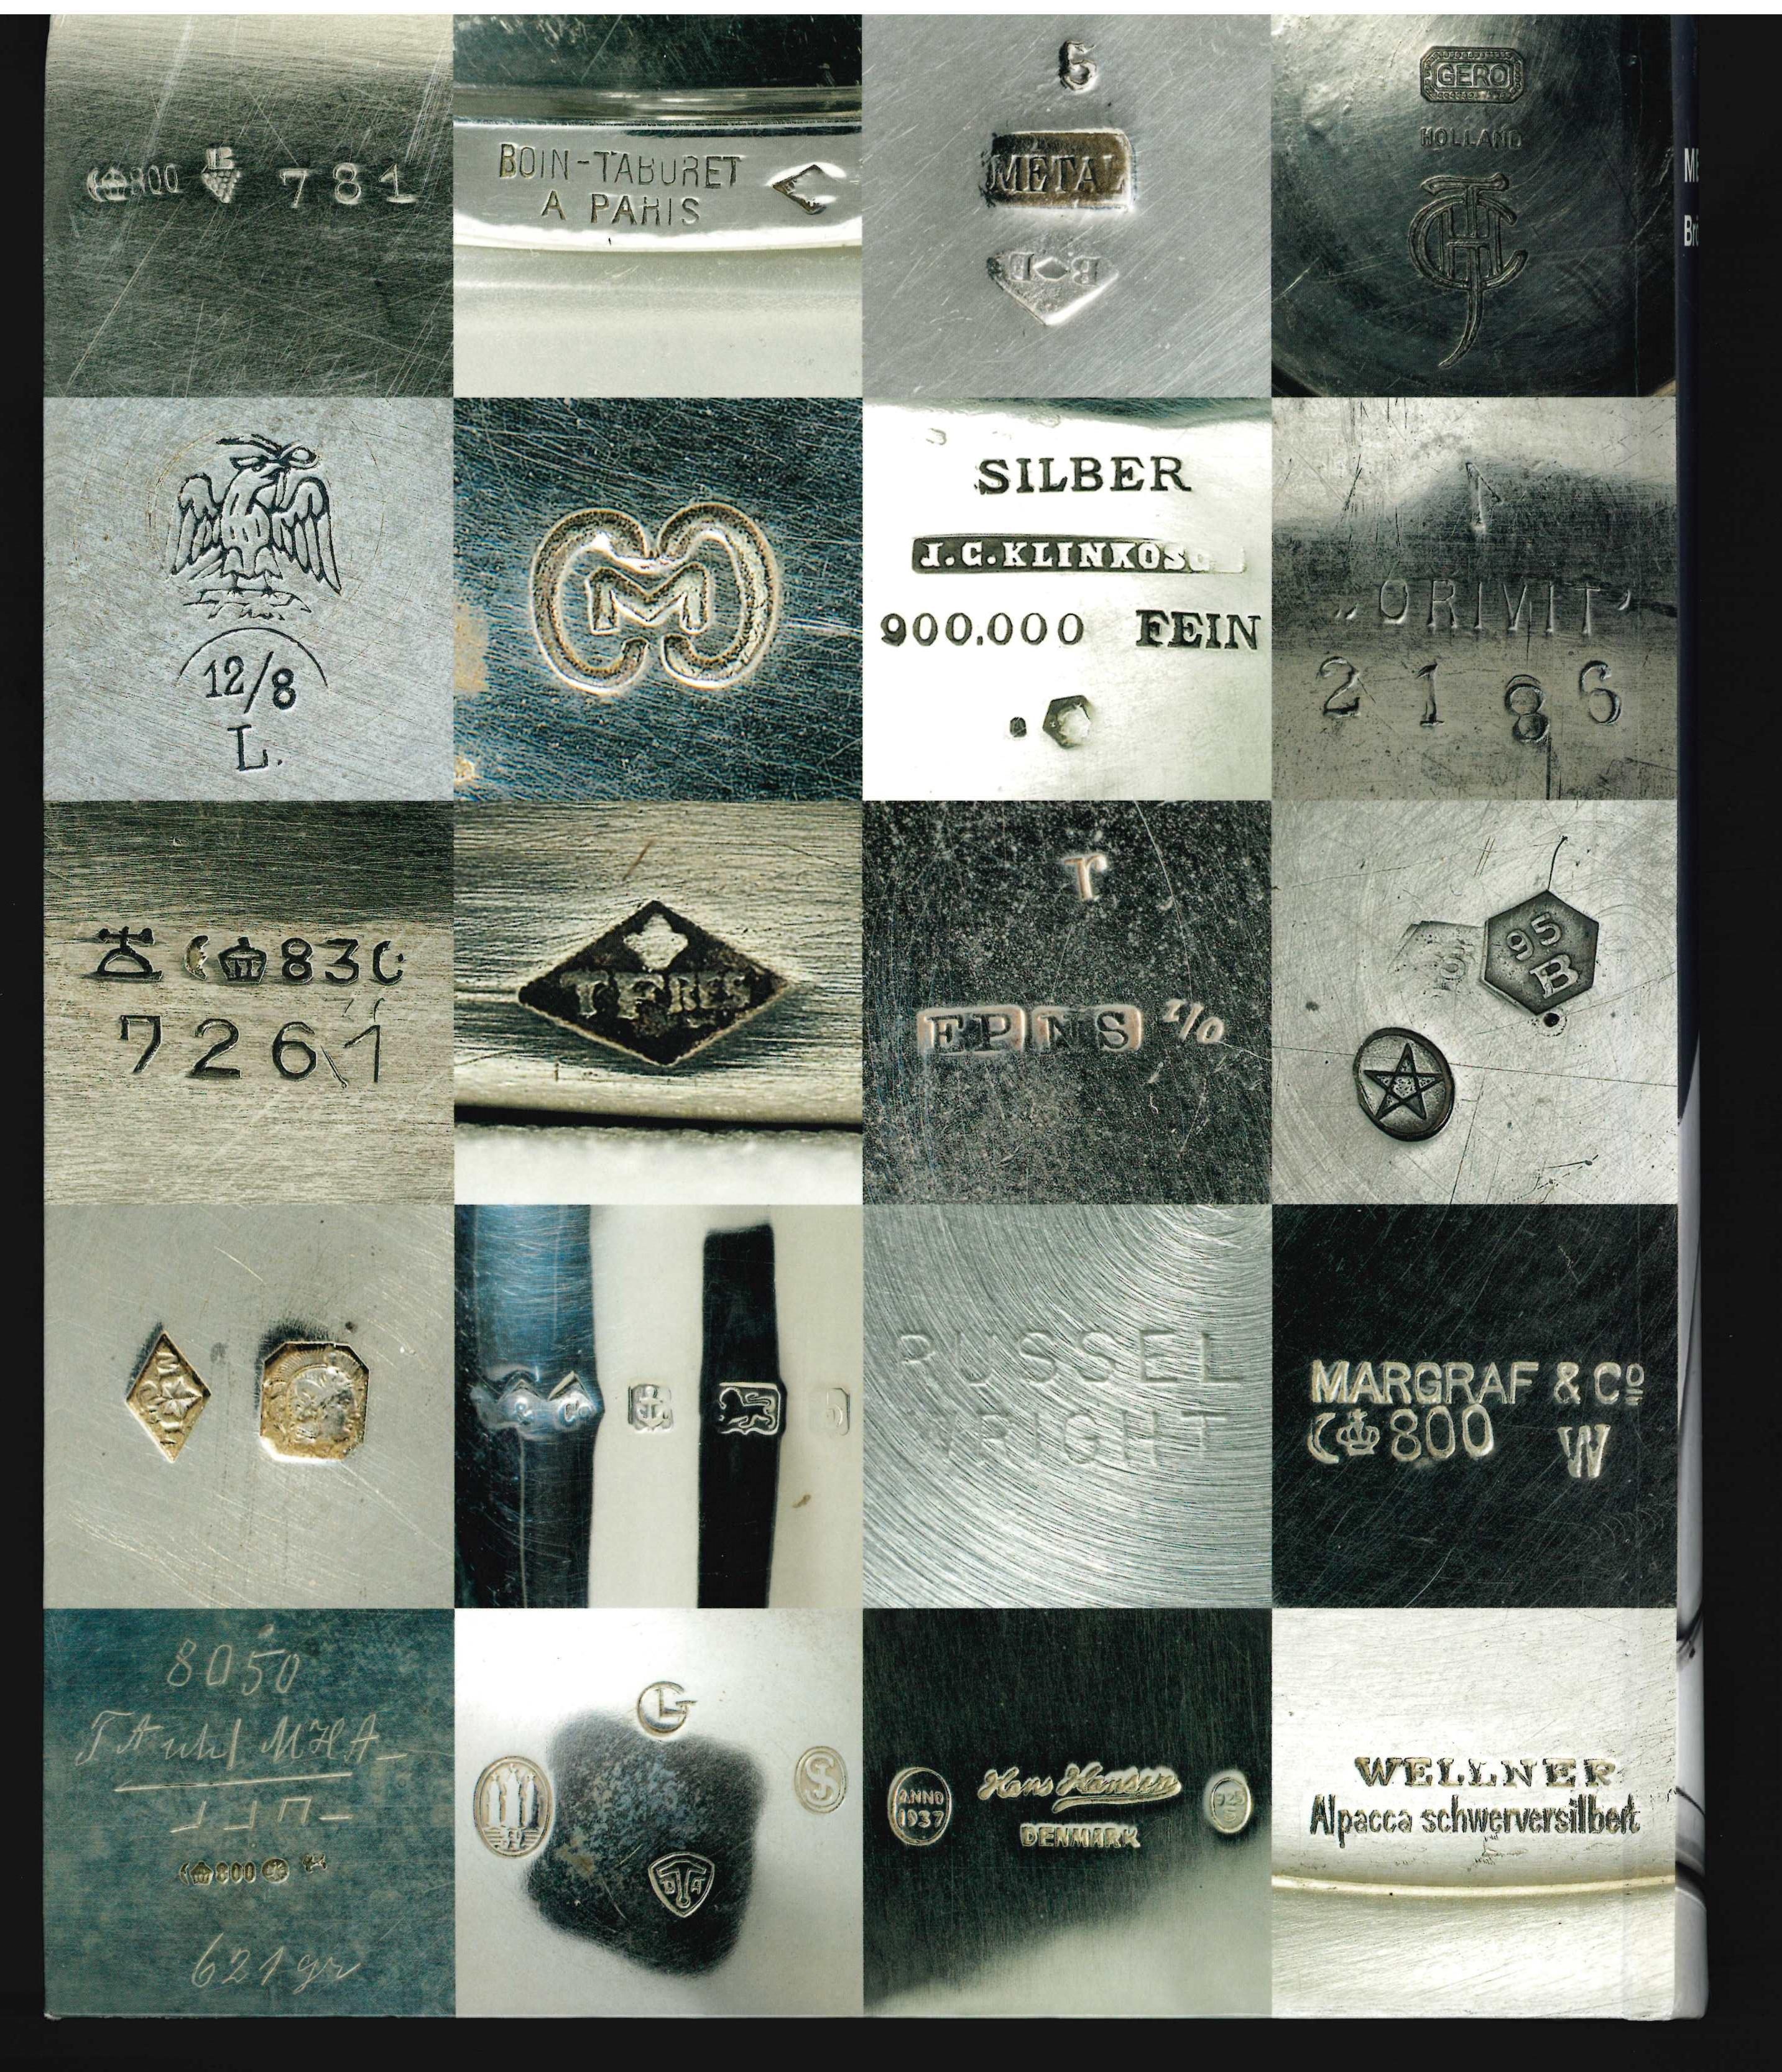 Ce catalogue couvre la collection d'objets creux du musée Brohan en argent, étain, laiton, cuivre, acier inoxydable, nickel, aluminium et alliages métalliques tels que le nickel-argent, de la fin du XIXe siècle et de la première partie du XXe siècle